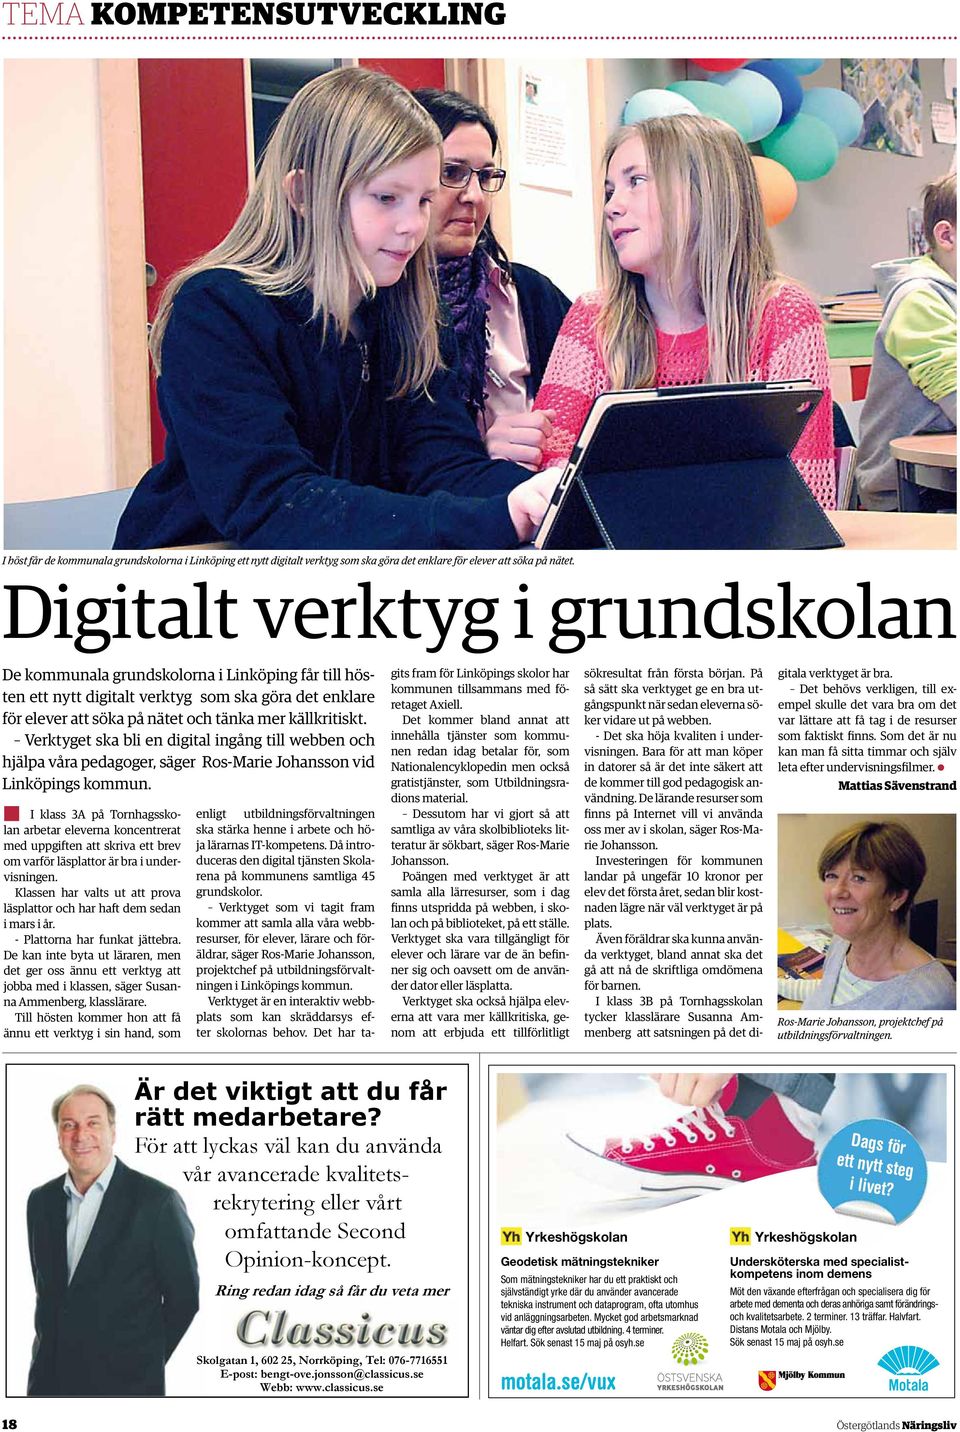 Verktyget ska bli en digital ingång till webben och hjälpa våra pedagoger, säger Ros-Marie Johansson vid Linköpings kommun.